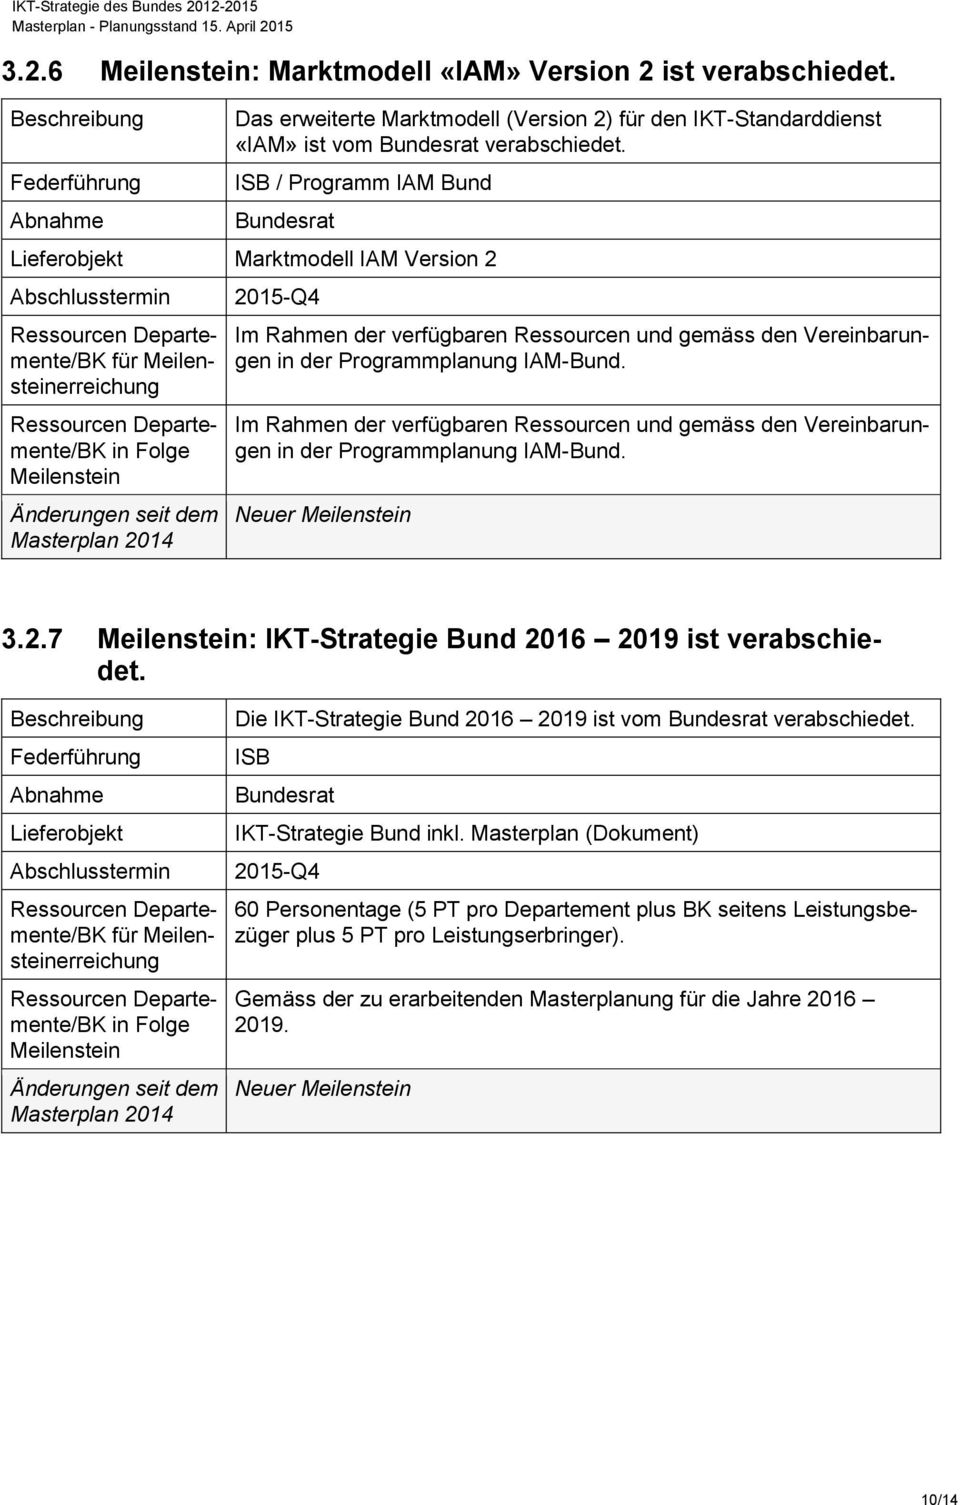 IAM-Bund. Im Rahmen der verfügbaren Ressourcen und gemäss den Vereinbarungen in der Programmplanung IAM-Bund. Neuer 3.2.7 : IKT-Strategie Bund 2016 2019 ist verabschiedet.